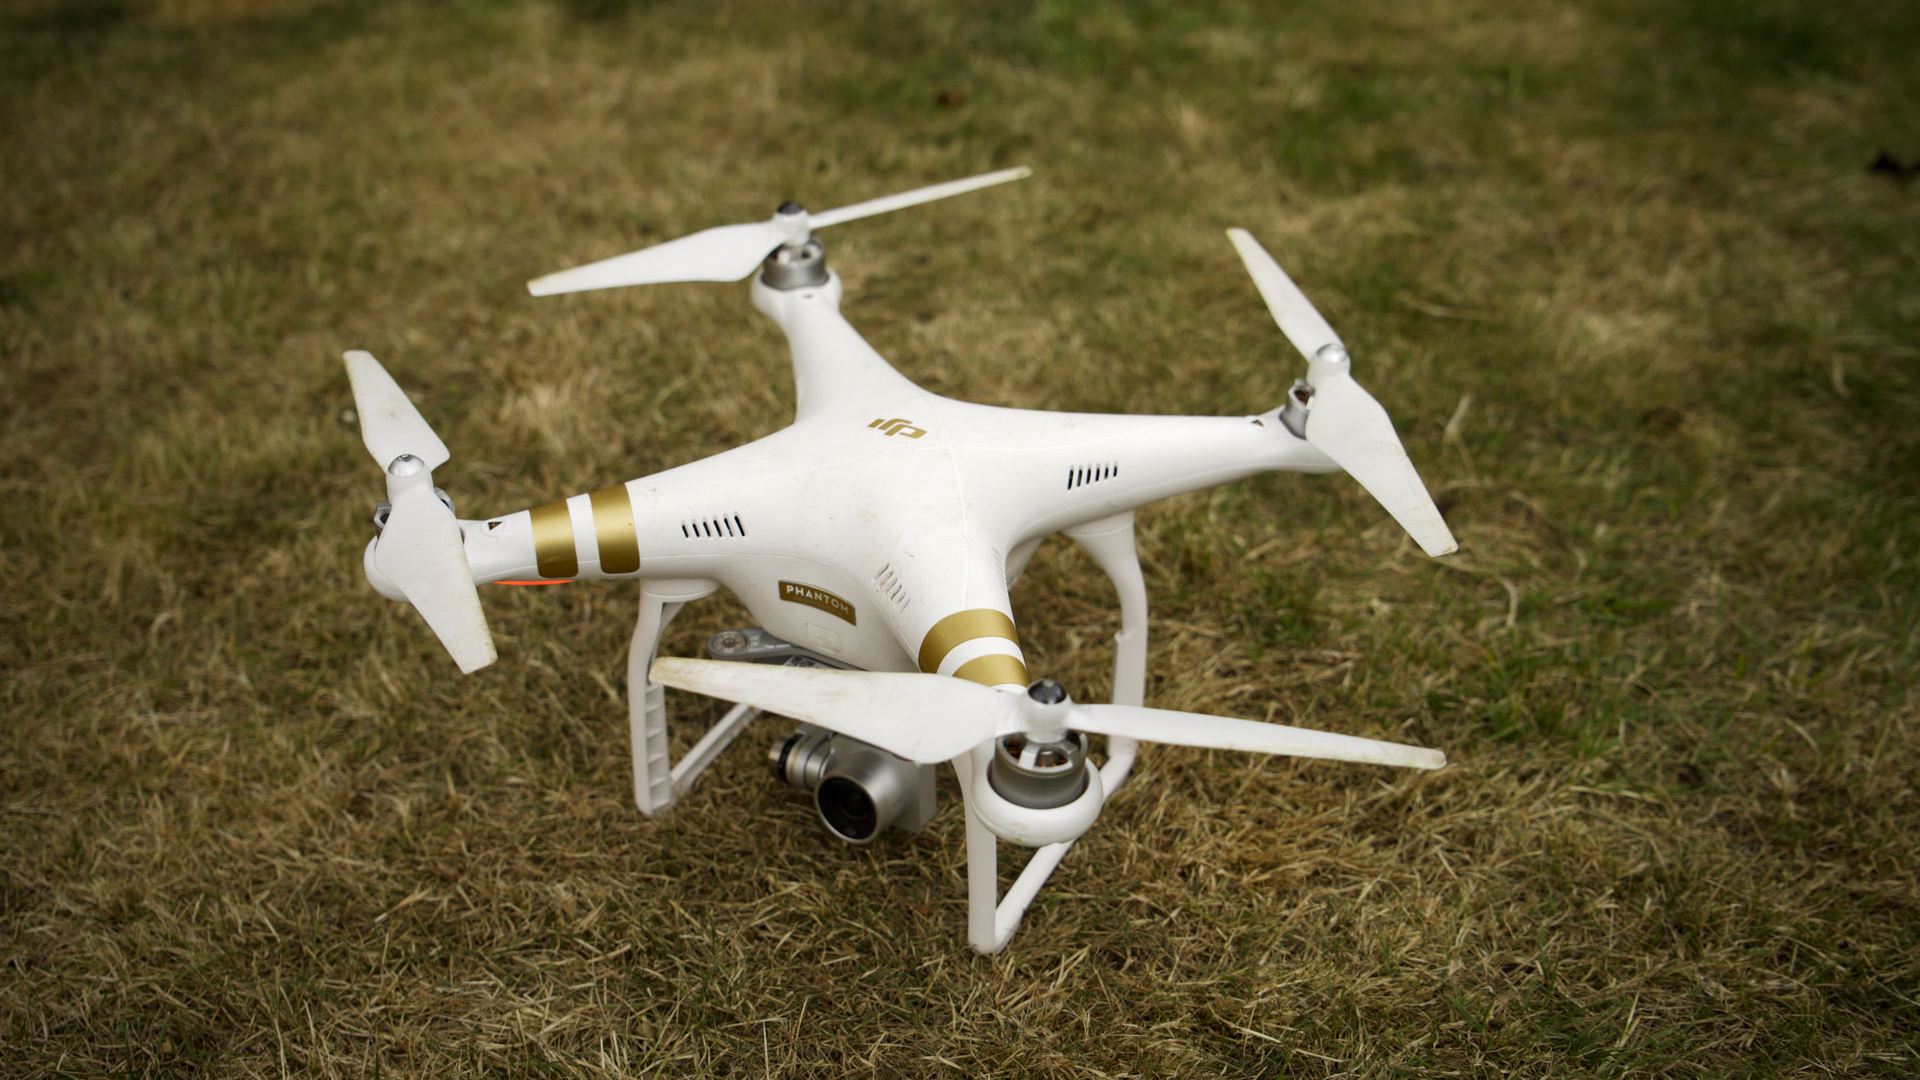 DJI Phantom 3 Professional Aerial Drone 